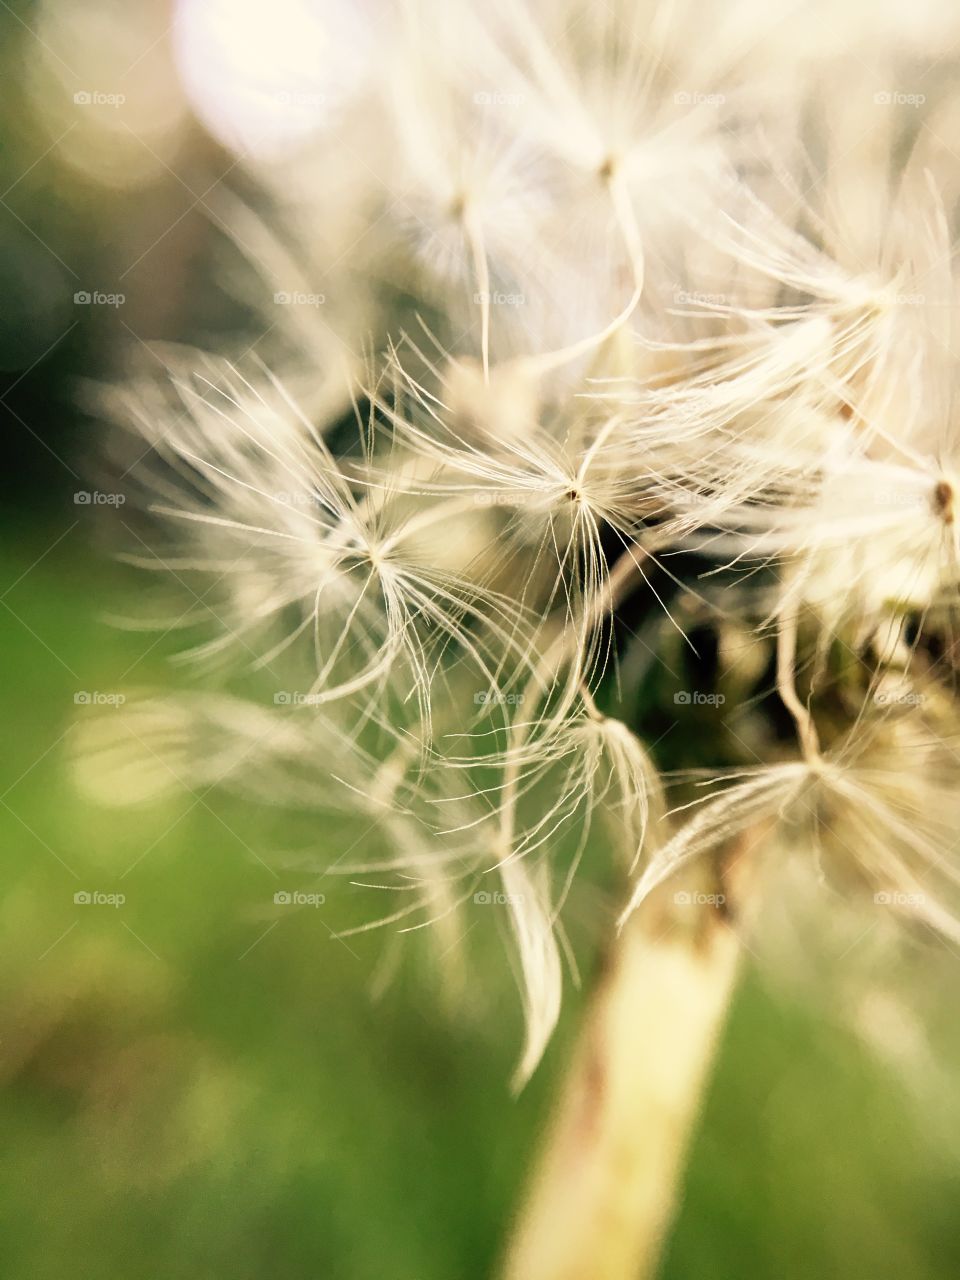 Dandelion, Nature, Summer, Grass, Field